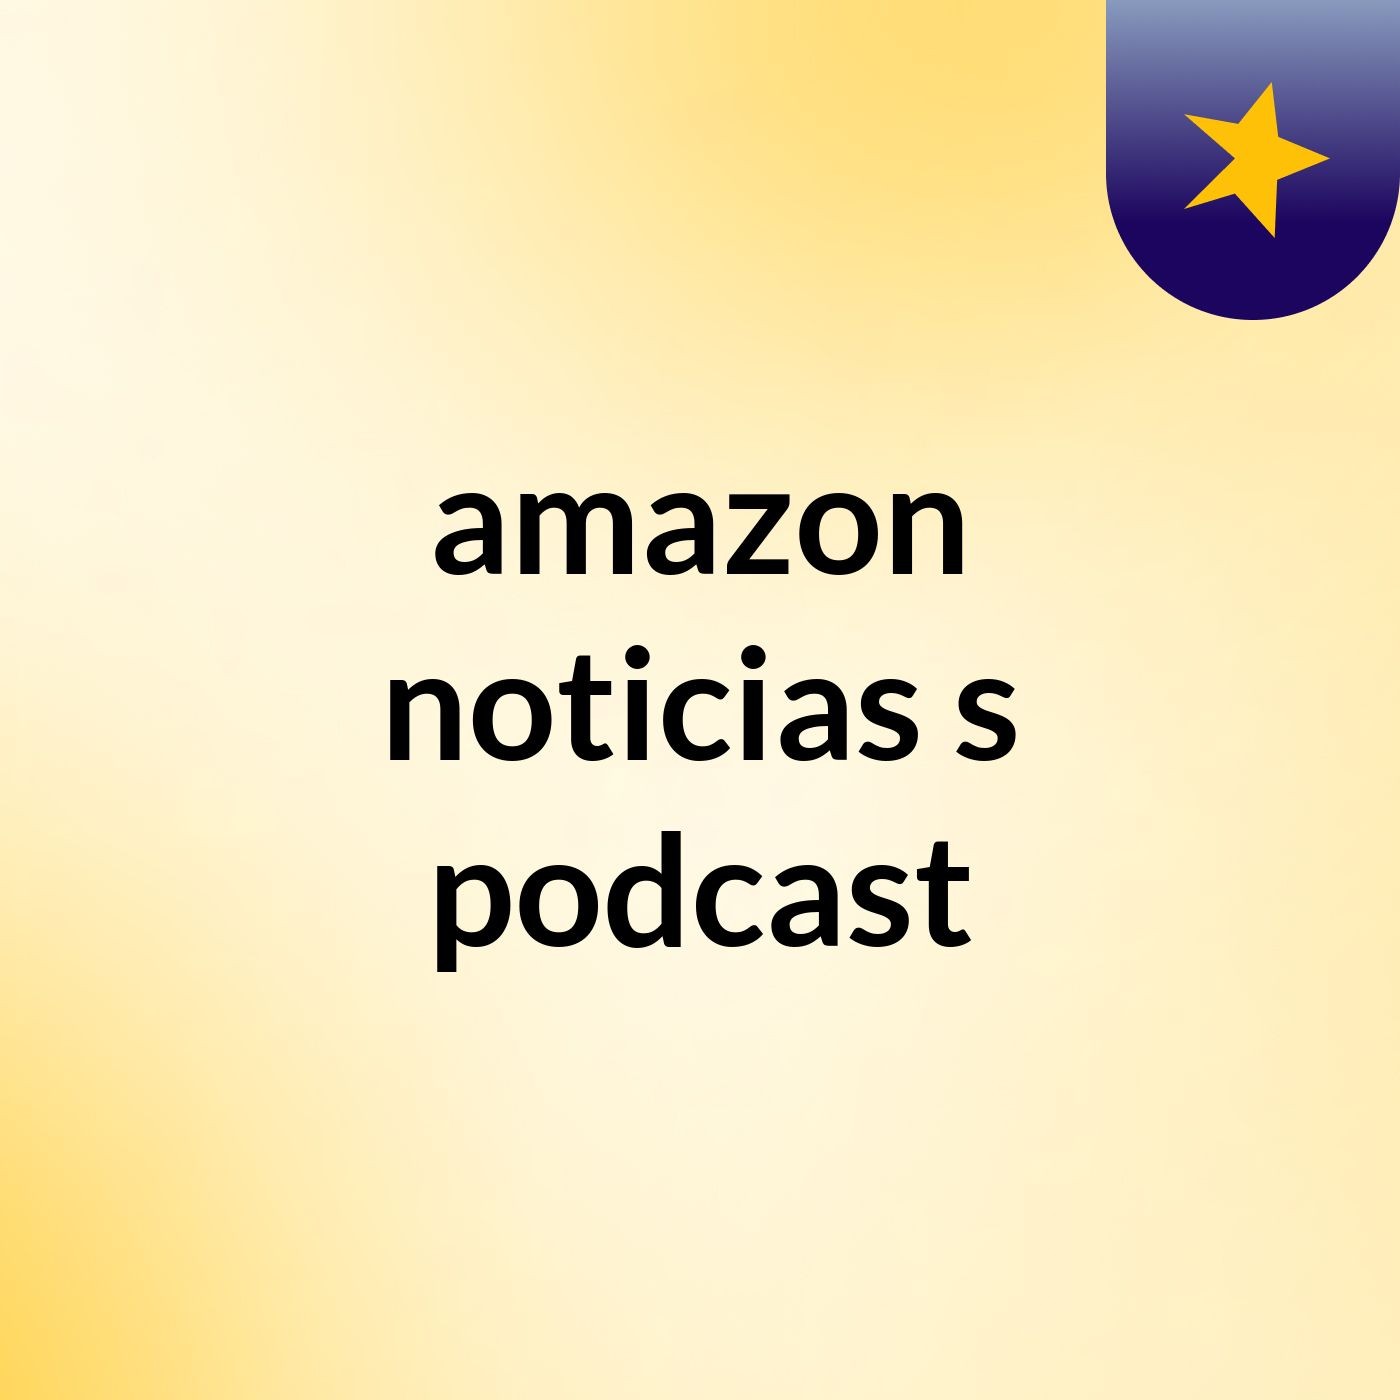 amazon noticias's podcast